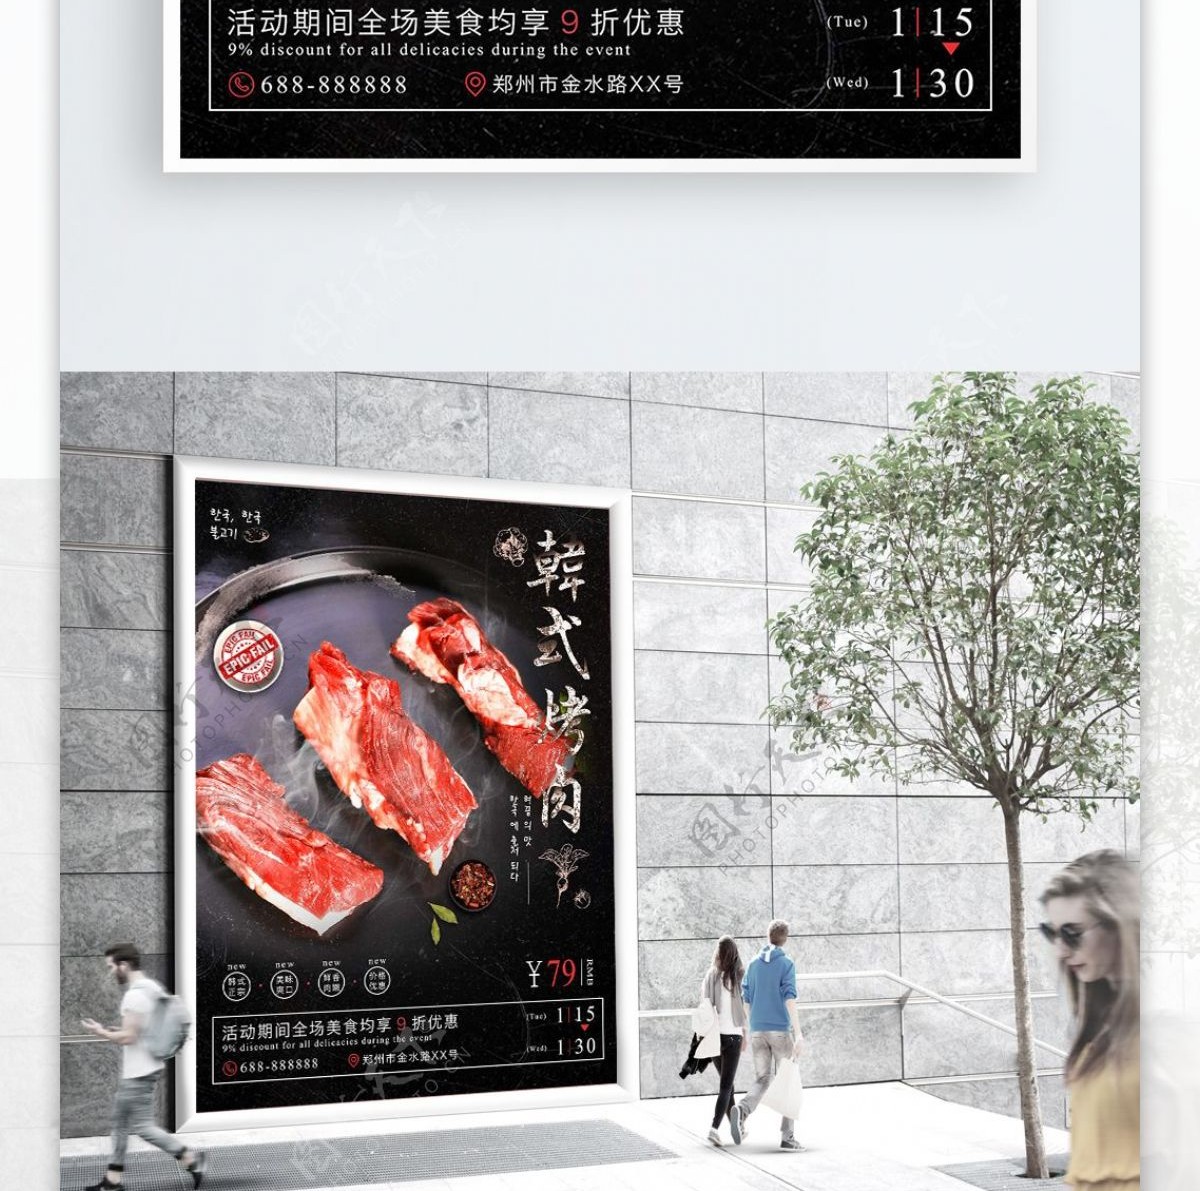 简约黑色质感韩式烤肉美食海报